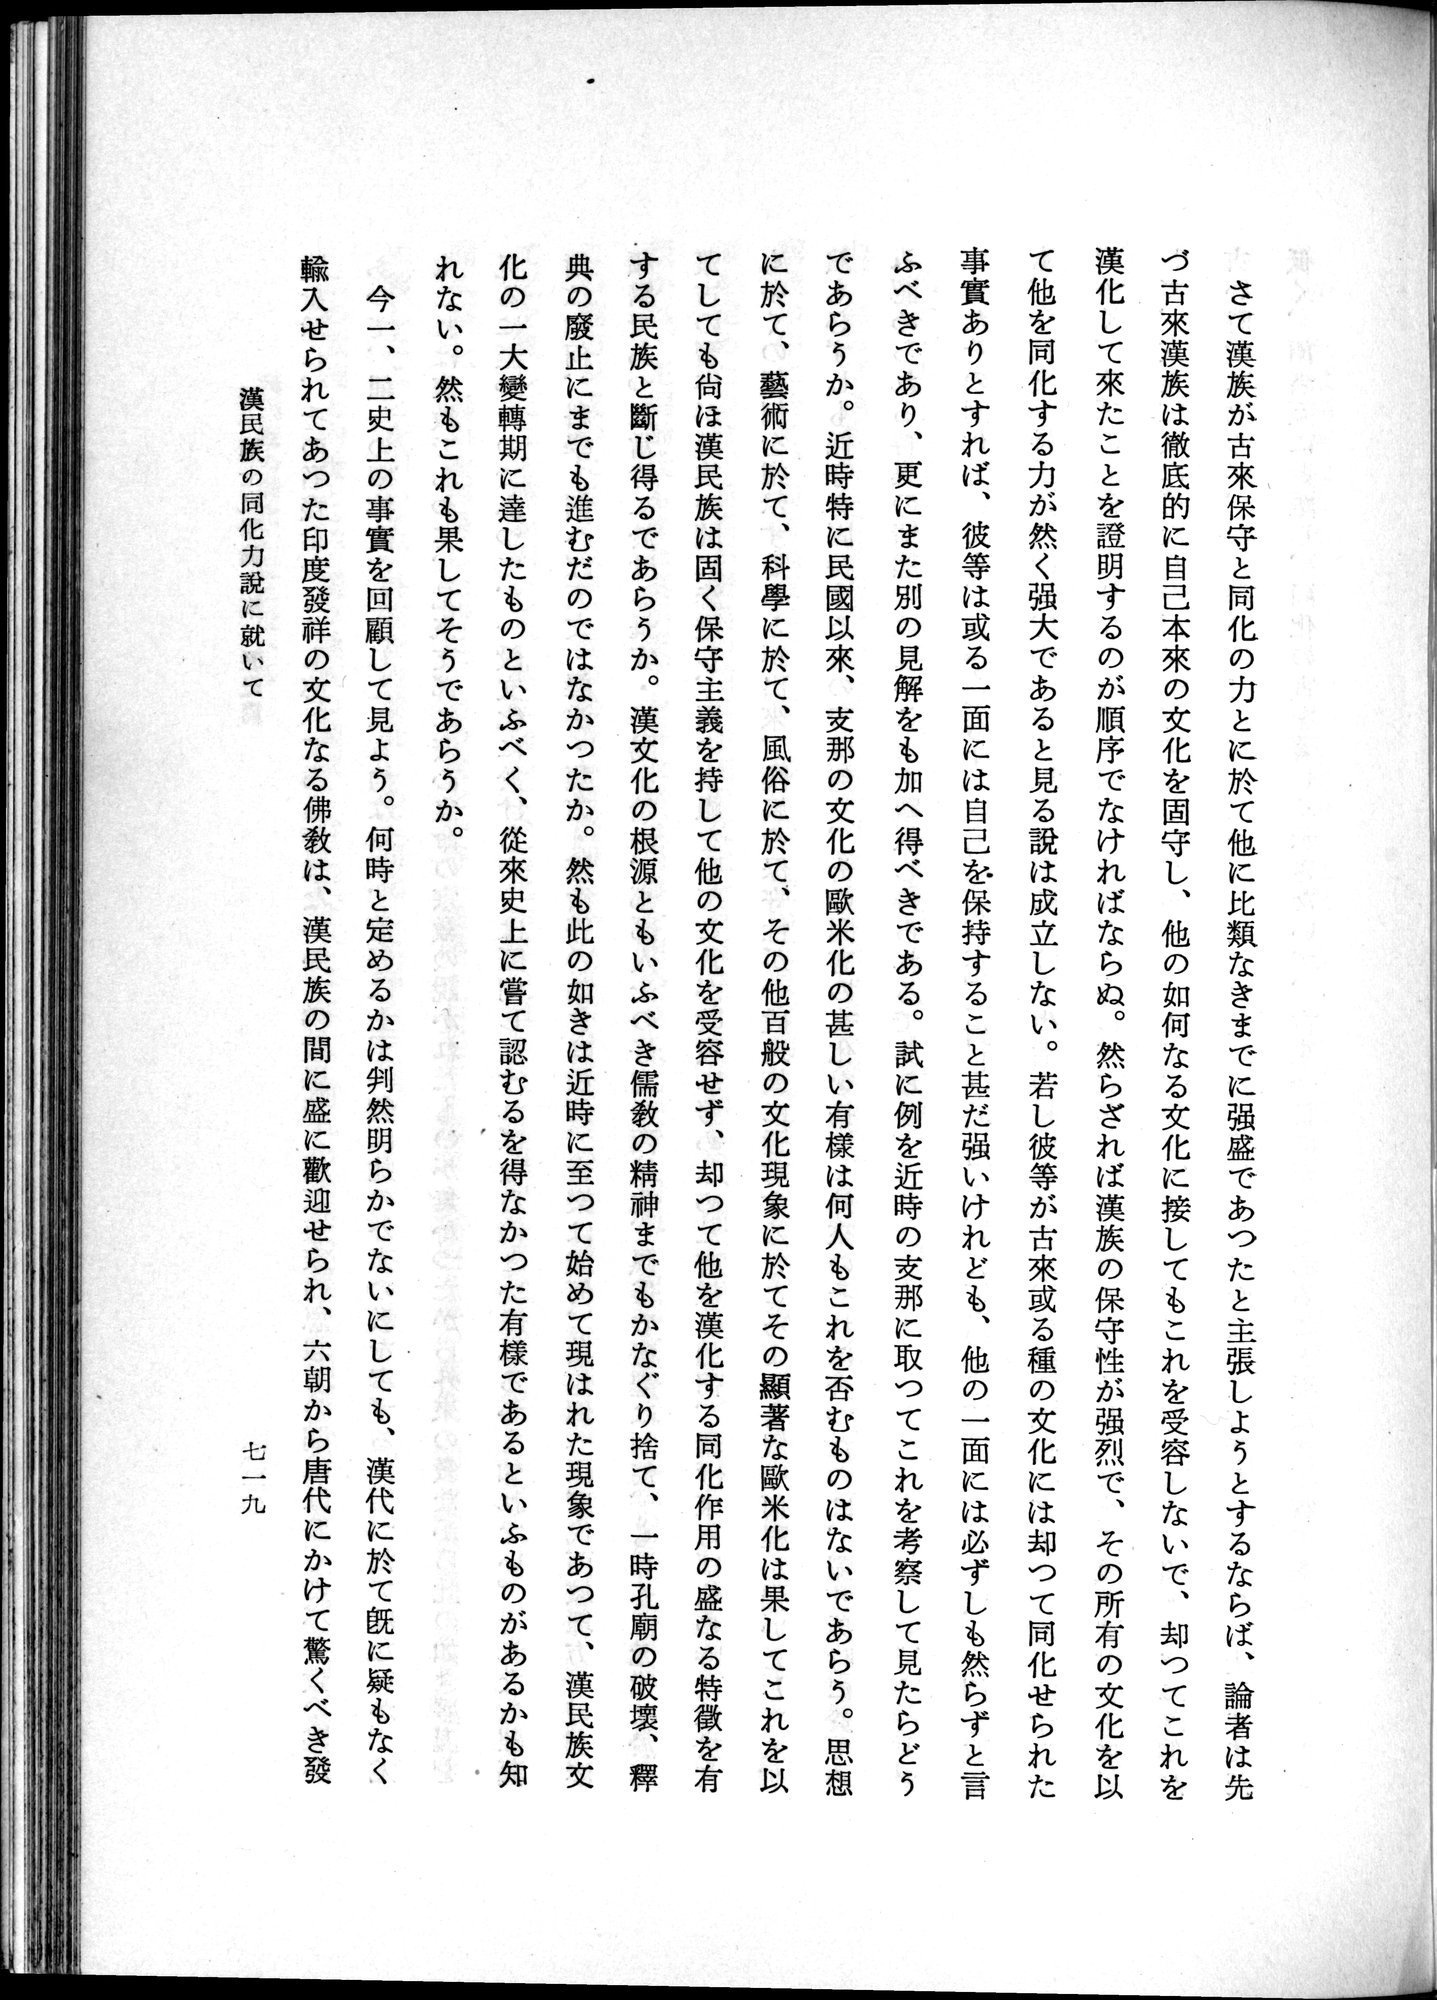 羽田博士史学論文集 : vol.1 / Page 757 (Grayscale High Resolution Image)